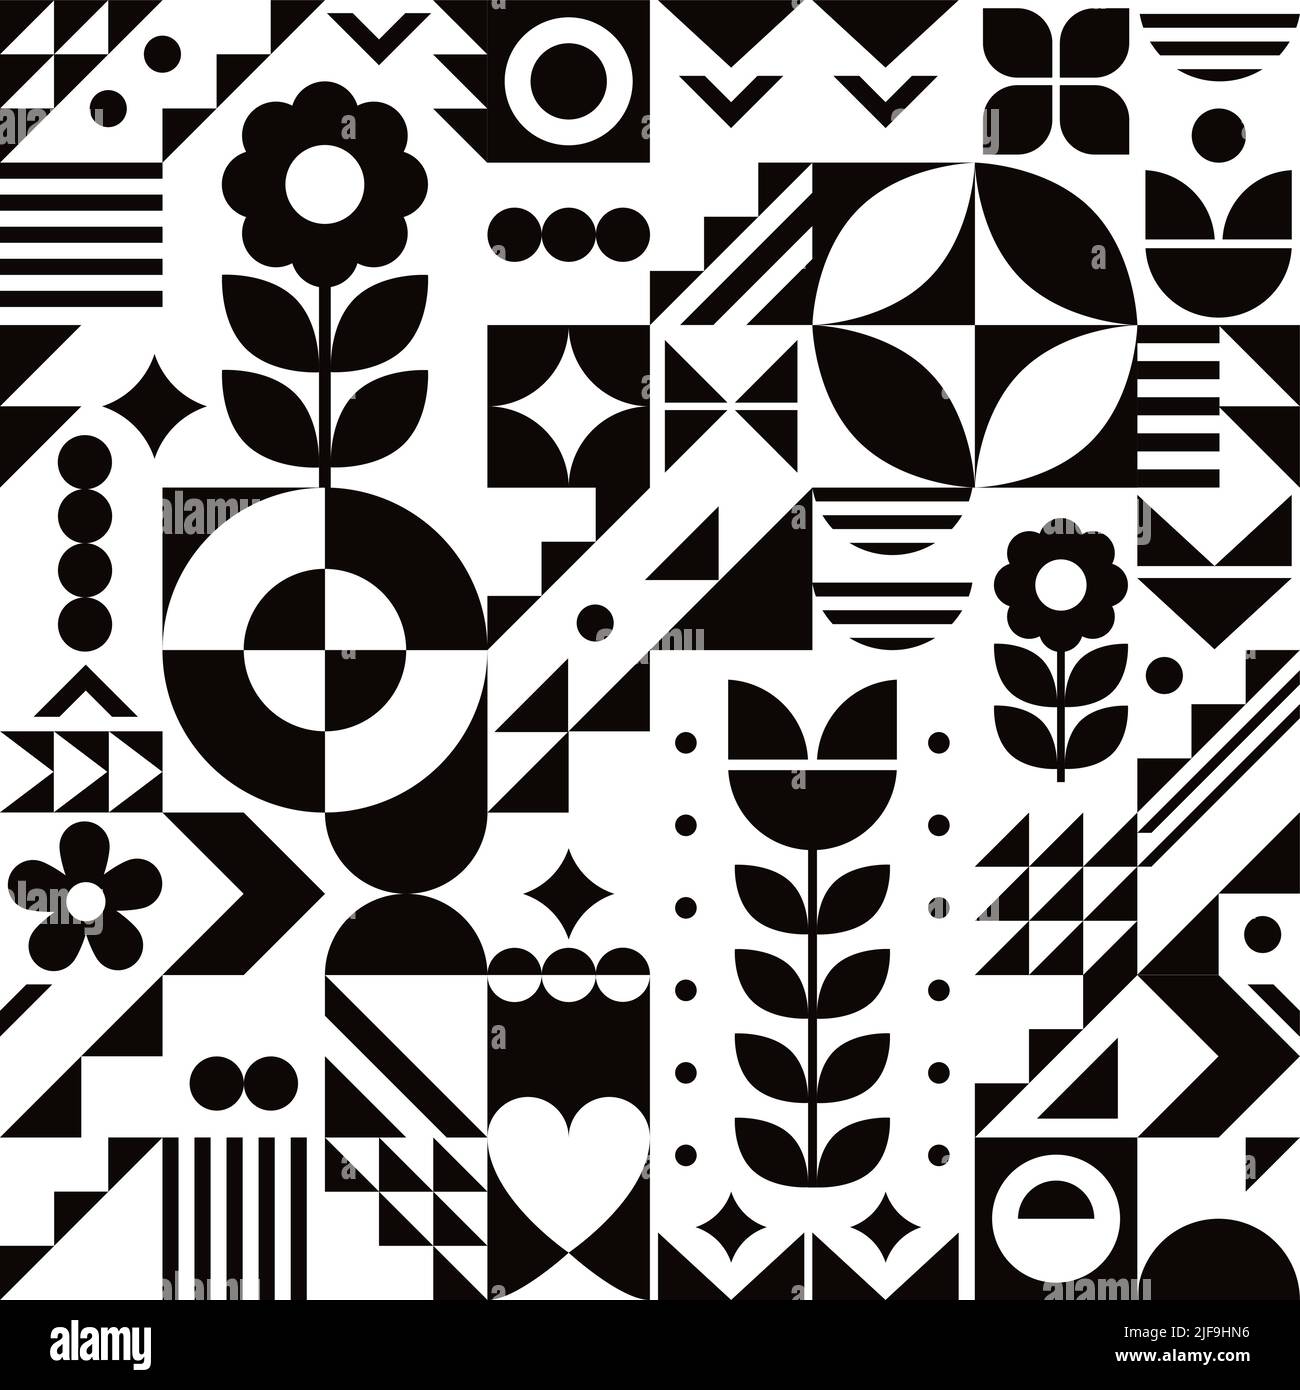 Stile Bauhaus fresco vettore geometrico senza cuciture in bianco e nero con fiori, astratto design moderno perfetto per carta da parati o tessuto, tessuto Illustrazione Vettoriale